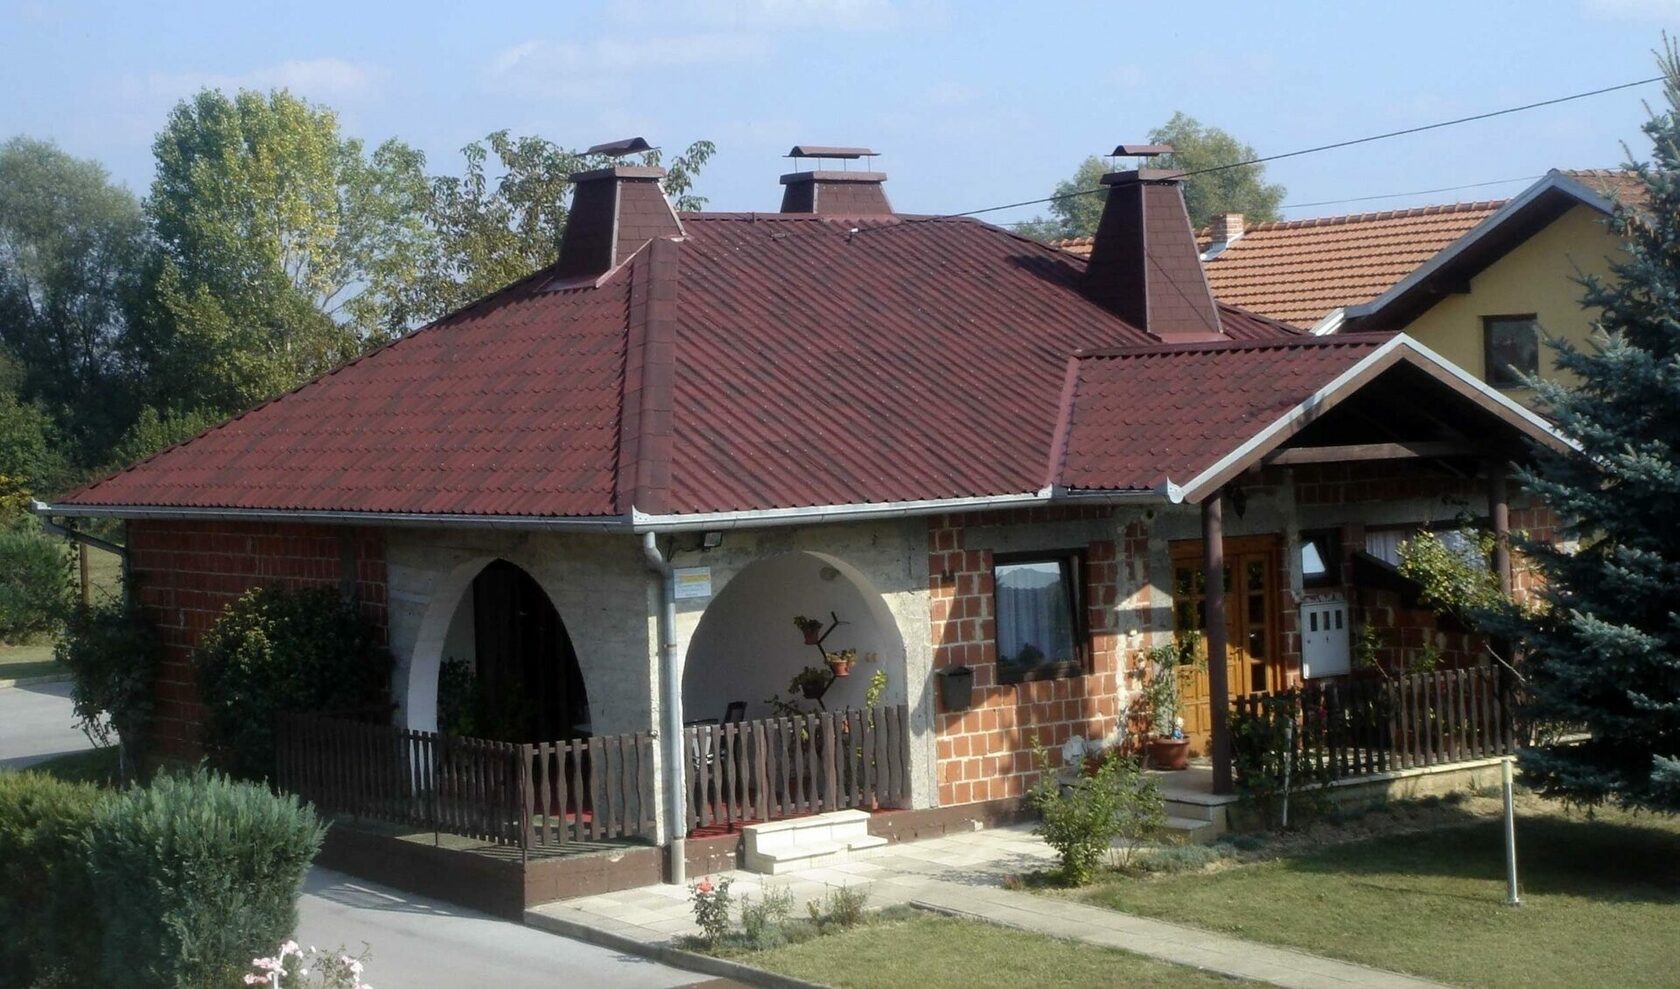 Вальмовая крыша из ондулина фото